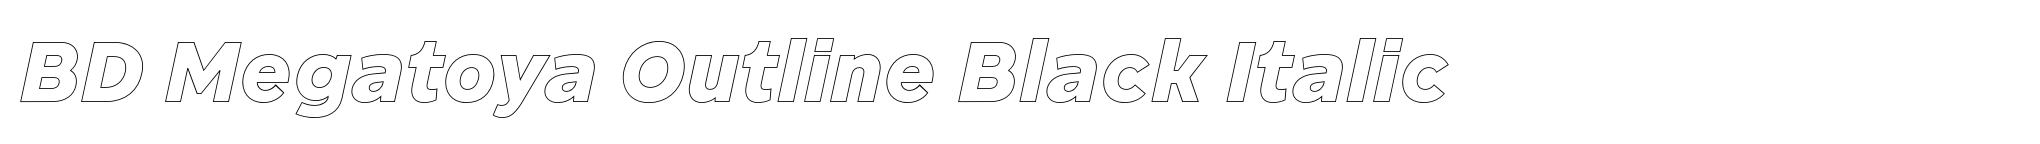 BD Megatoya Outline Black Italic image